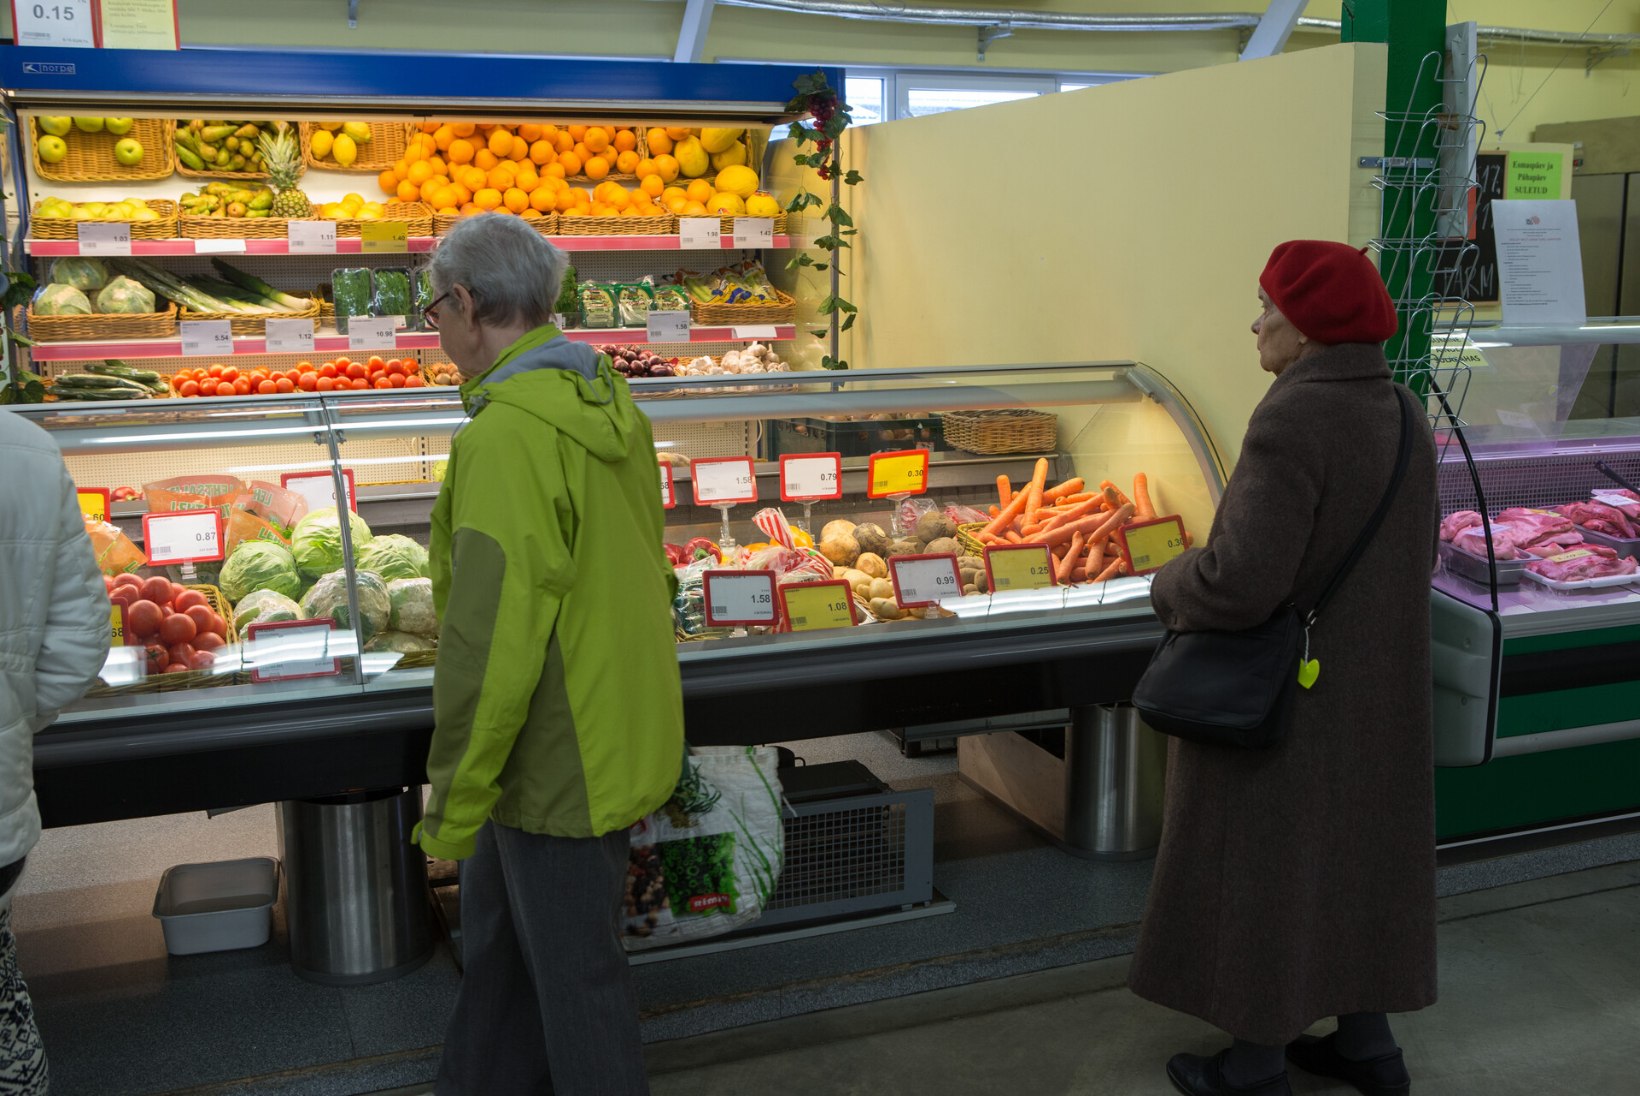 Nördinud tarbija kirjutab: Eesti toidupoodides on olematu teeninduskultuur! Annan sellele hindeks kolme